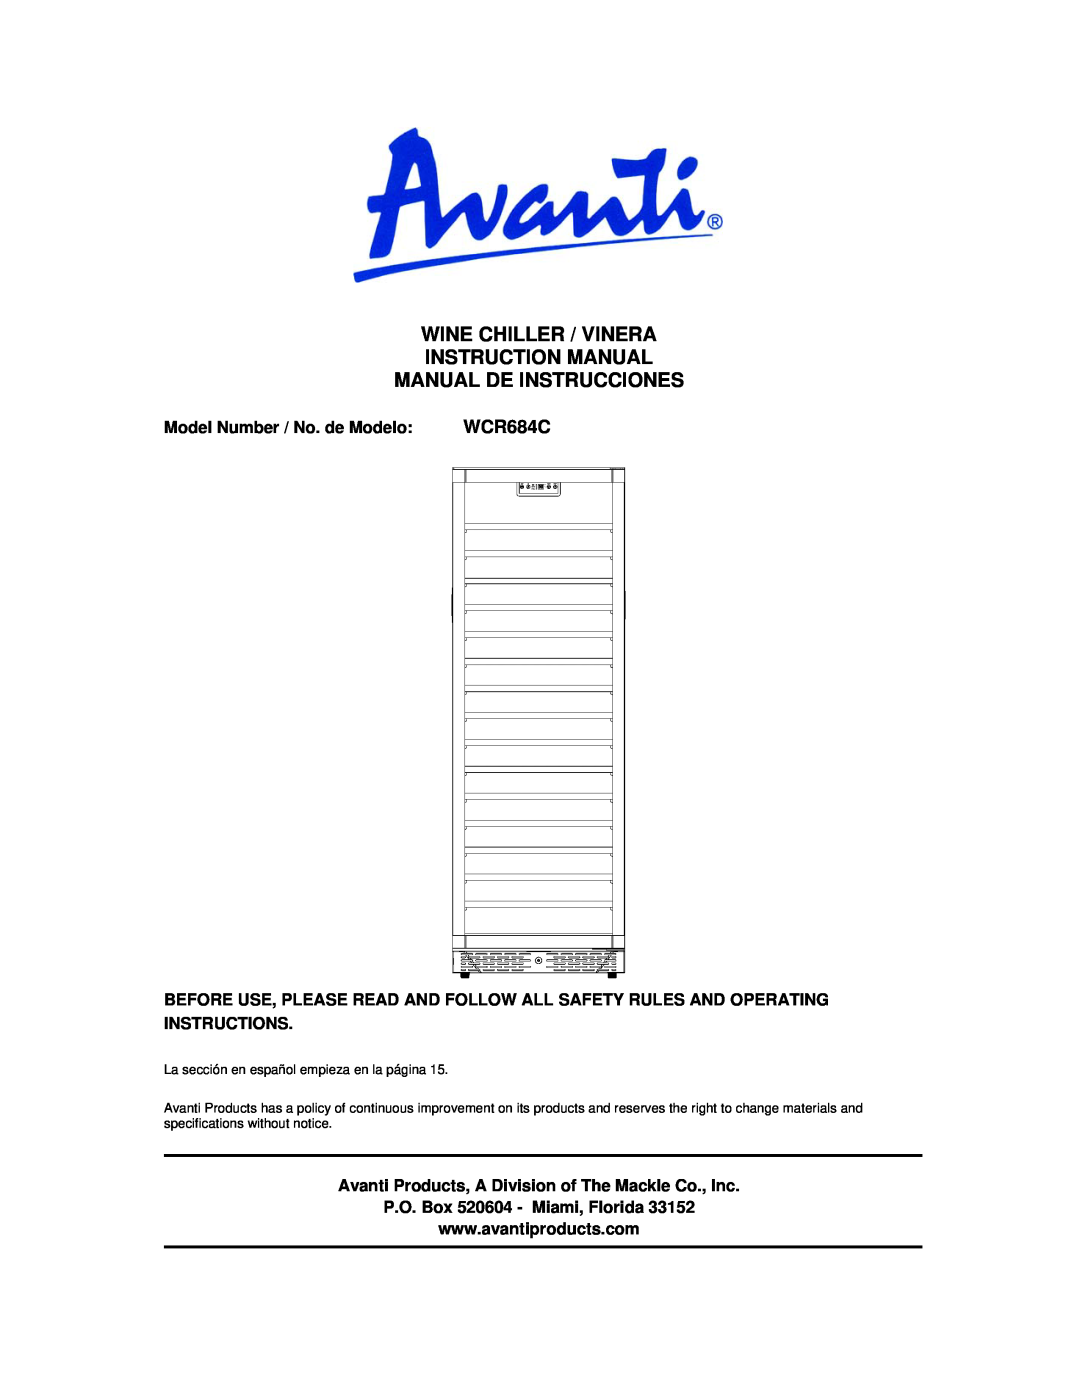 Avanti WCR684C instruction manual Wine Chiller / Vinera, Manual De Instrucciones, P.O. Box 520604 - Miami, Florida 